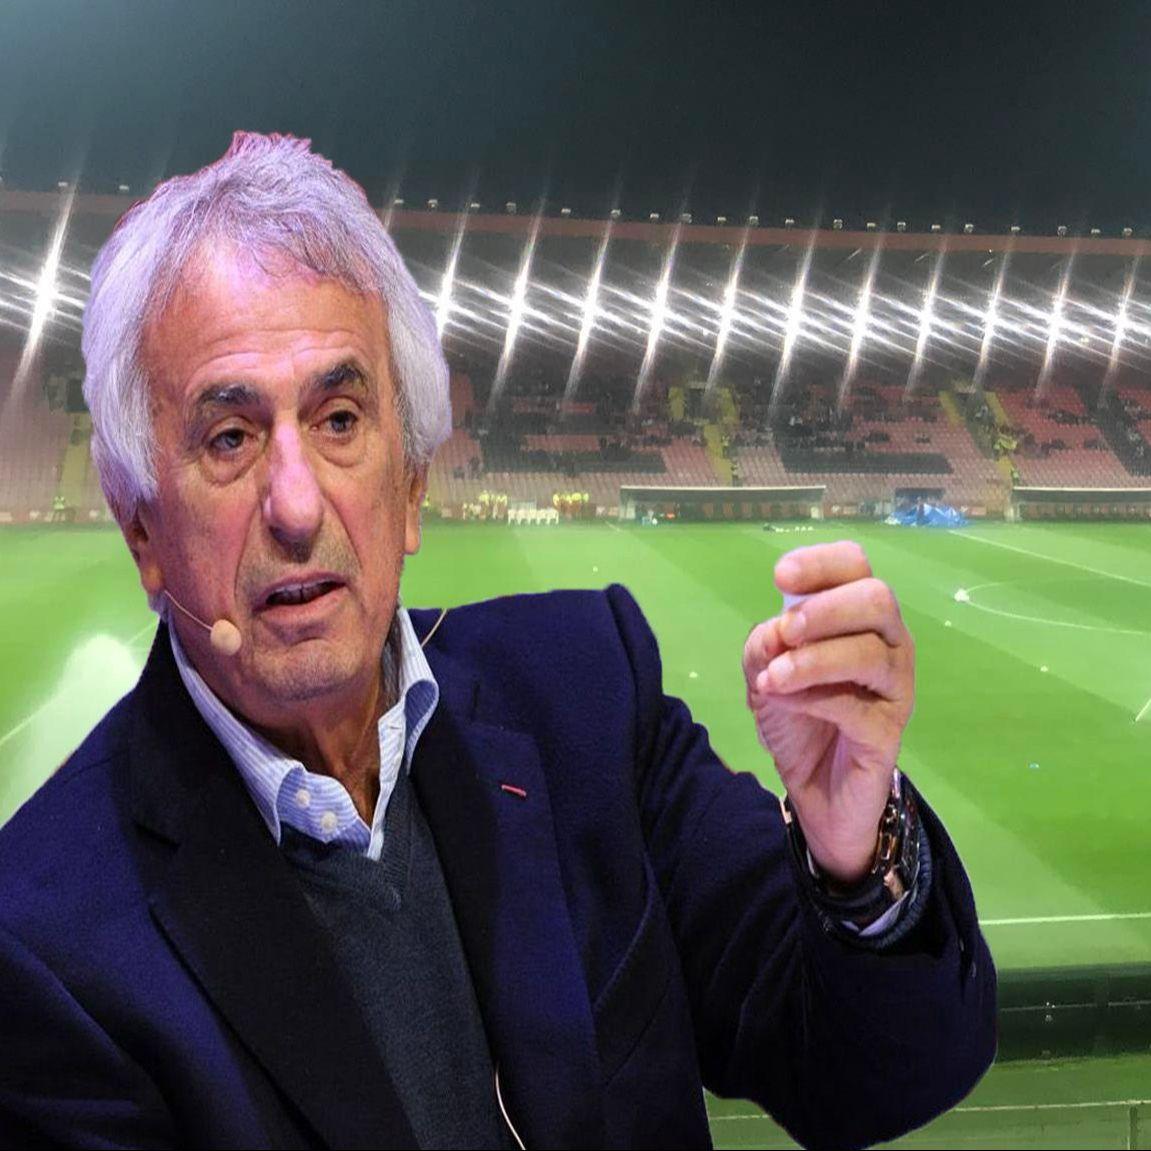 Vahid Halilhodžić za "Dnevni avaz" o stanju u bh. fudbalu: Radi li se na gašenju reprezentacije i države